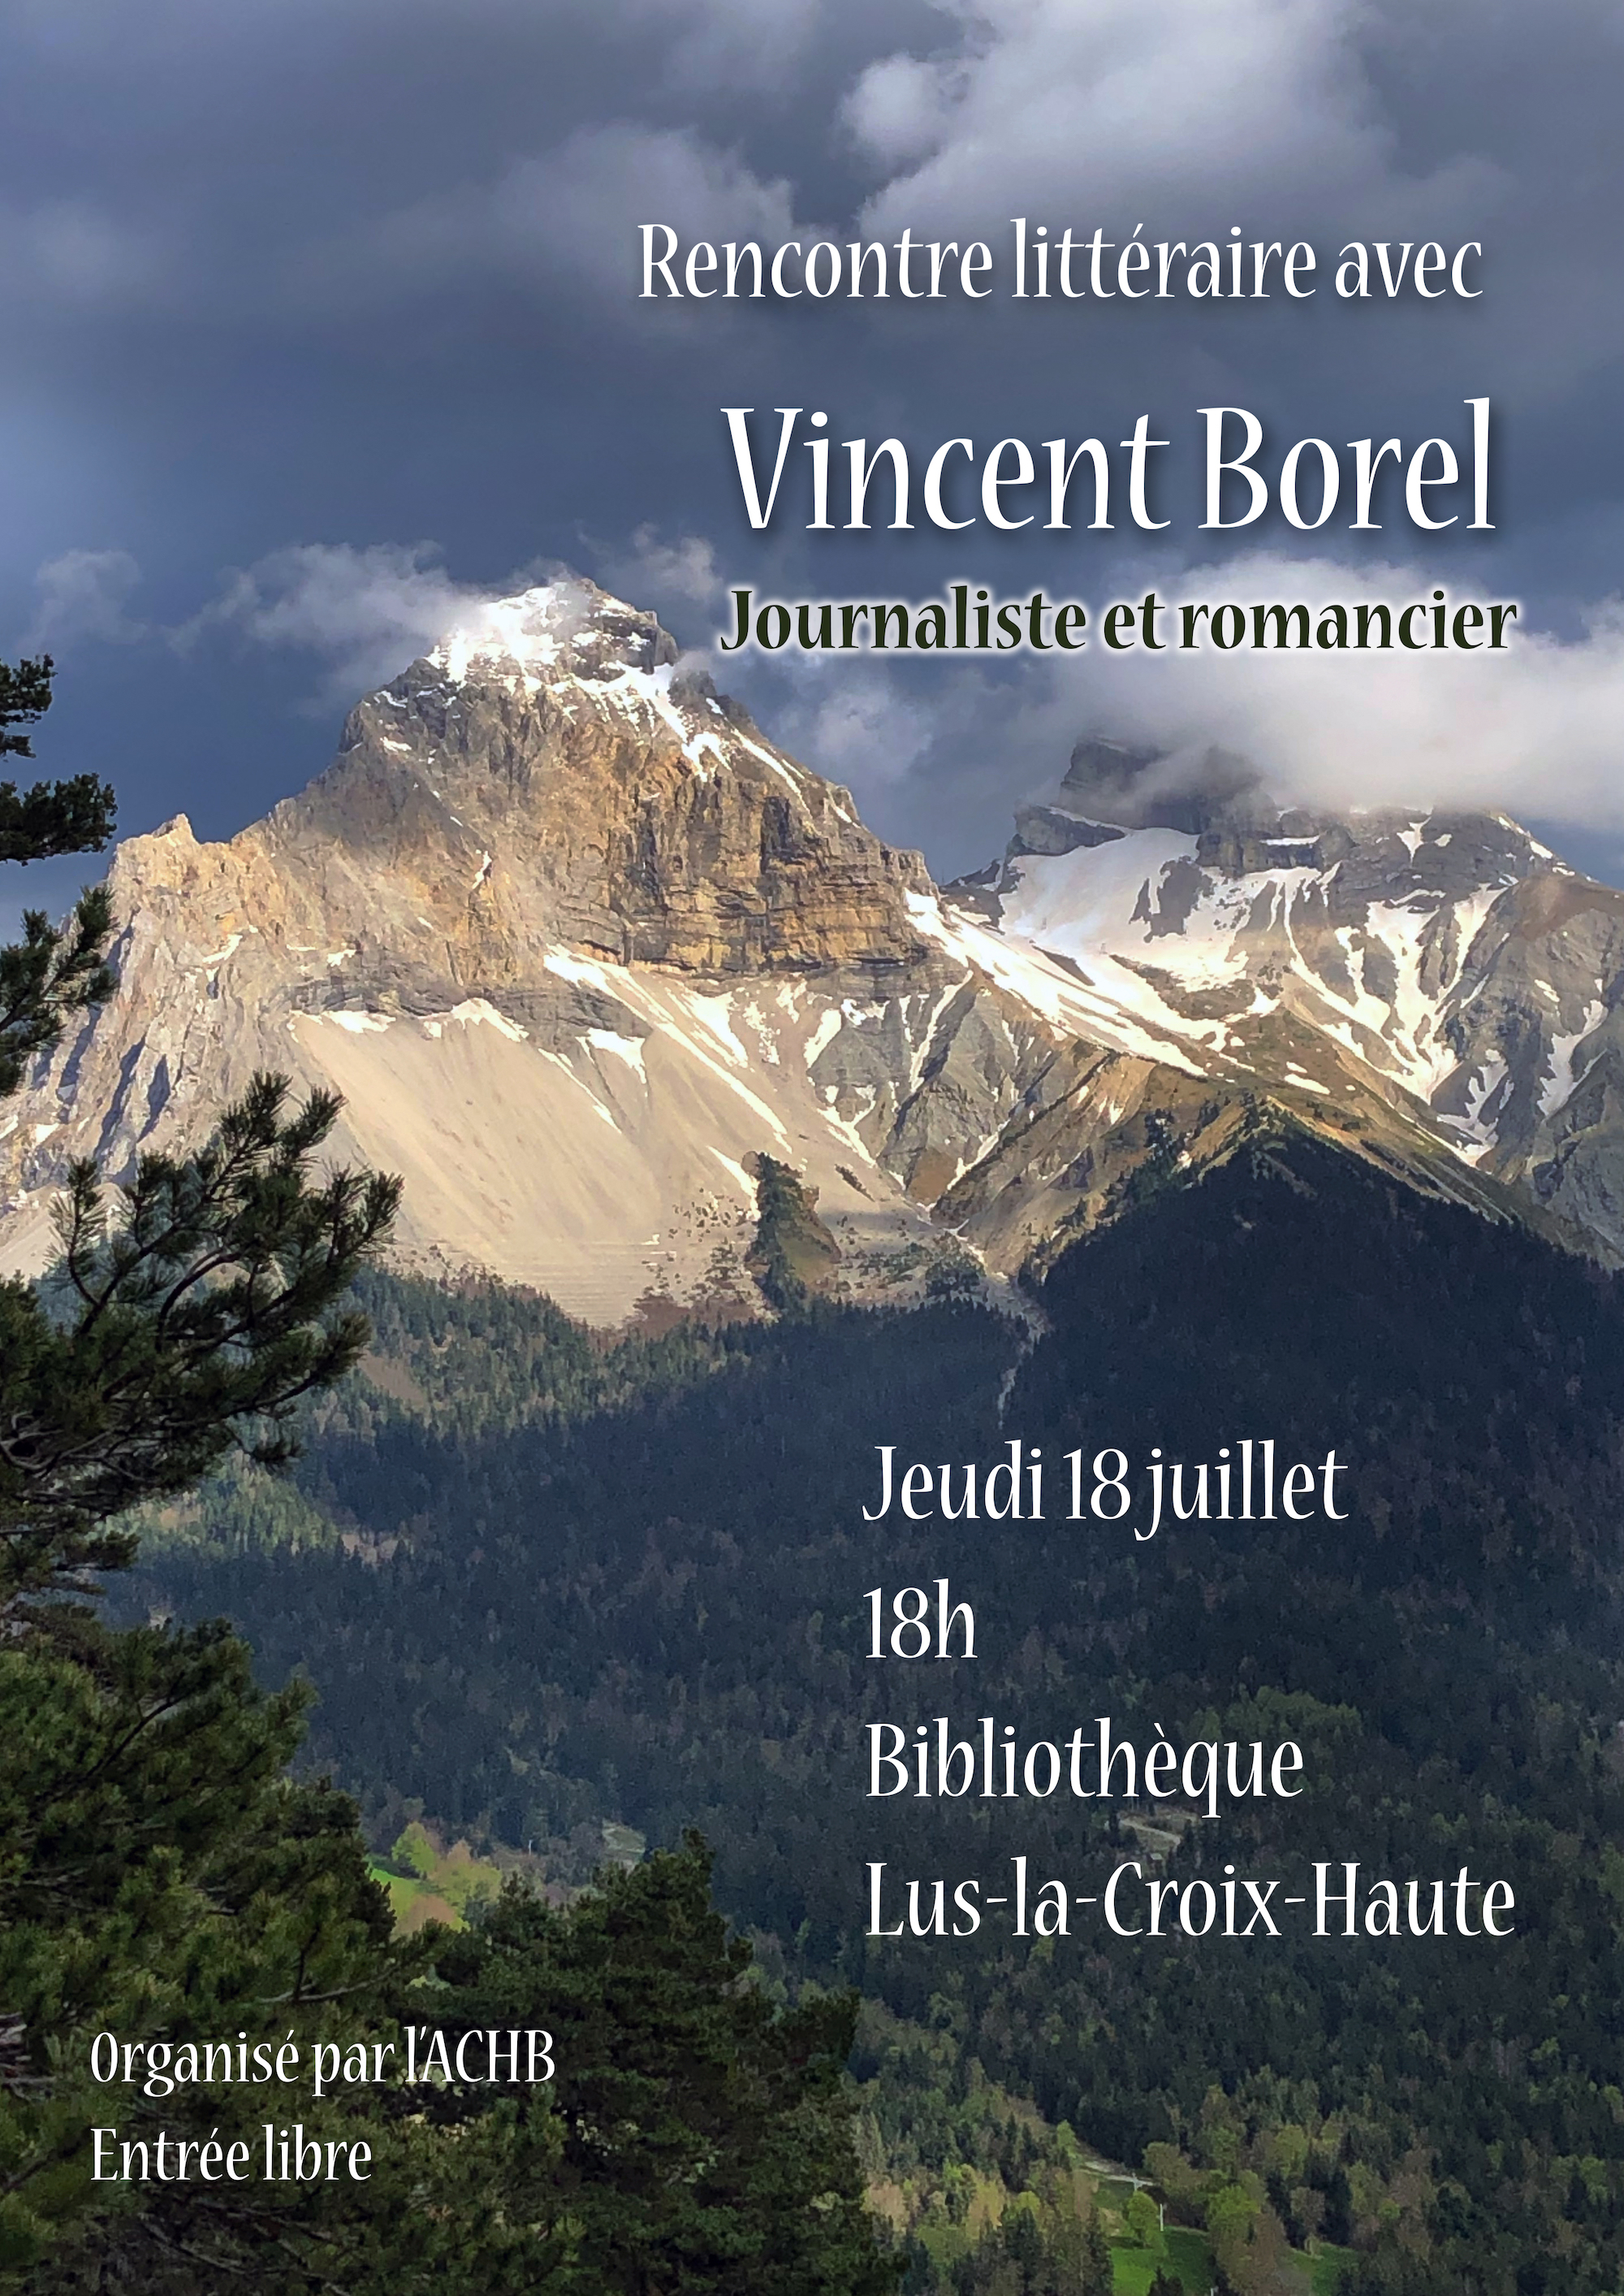 Rencontre avec Vincent Borel